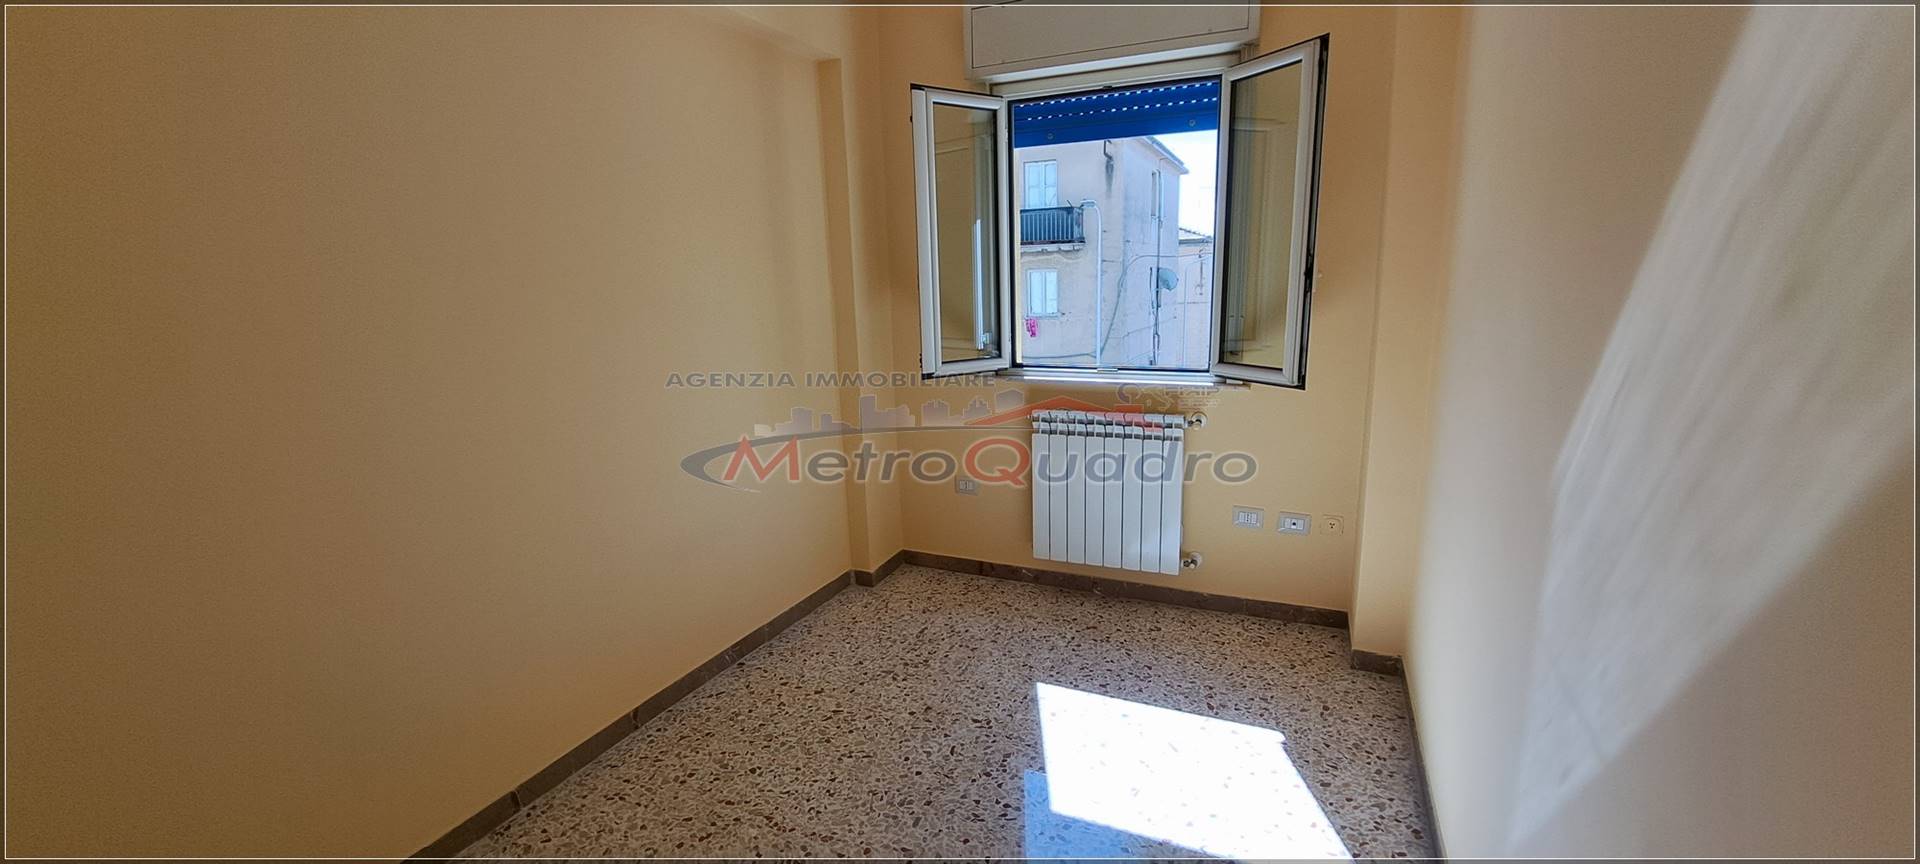 Appartamento in vendita a Canicattì, 3 locali, zona Località: C 3 ZONA VILLA COMUNALE, prezzo € 65.000 | CambioCasa.it